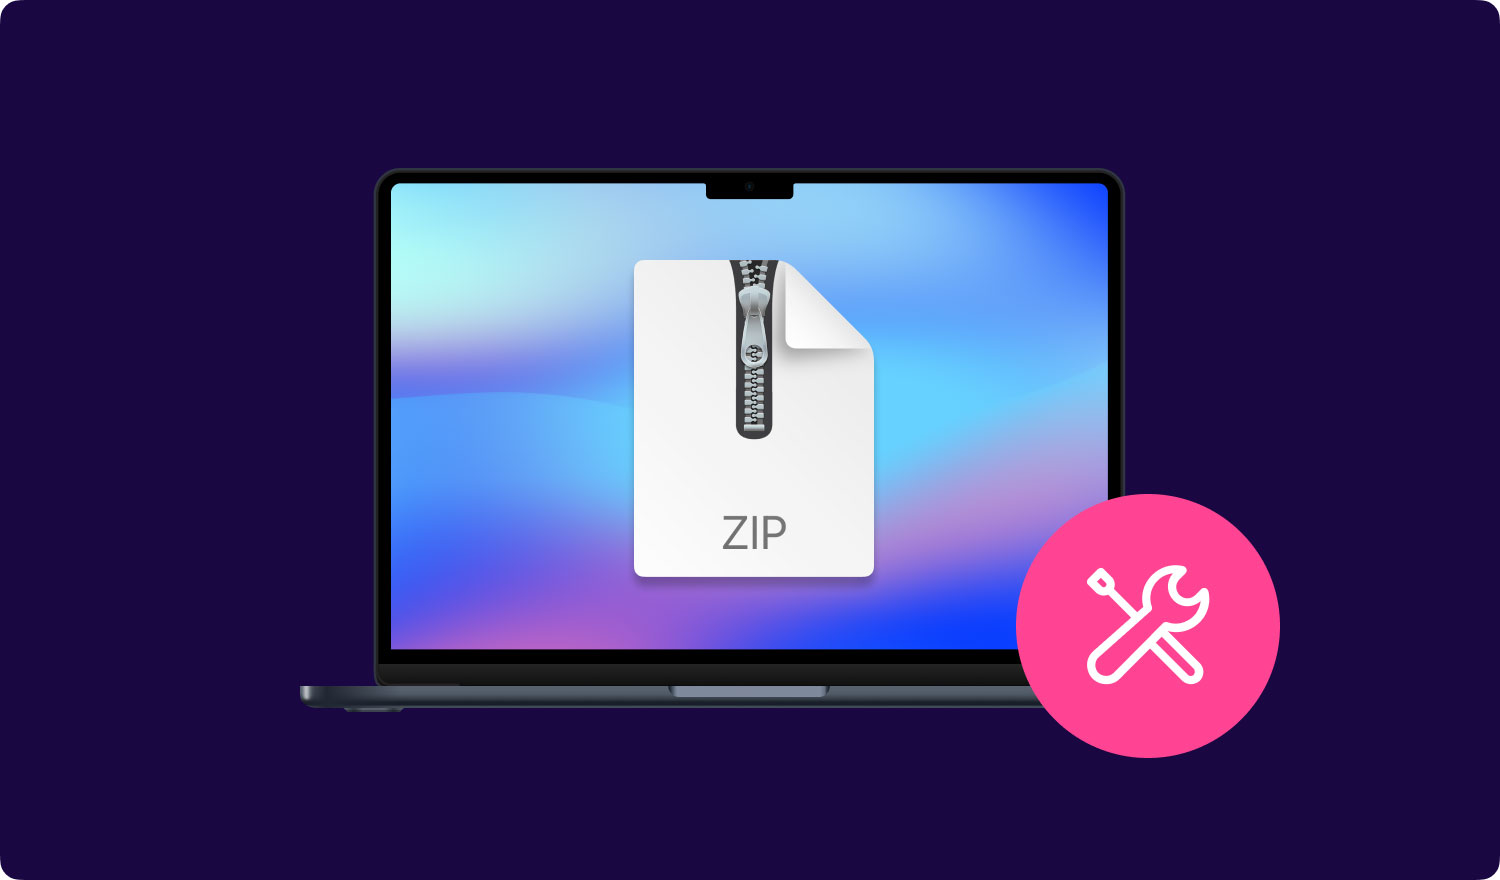 Zip-Datei kann nicht erweitert werden